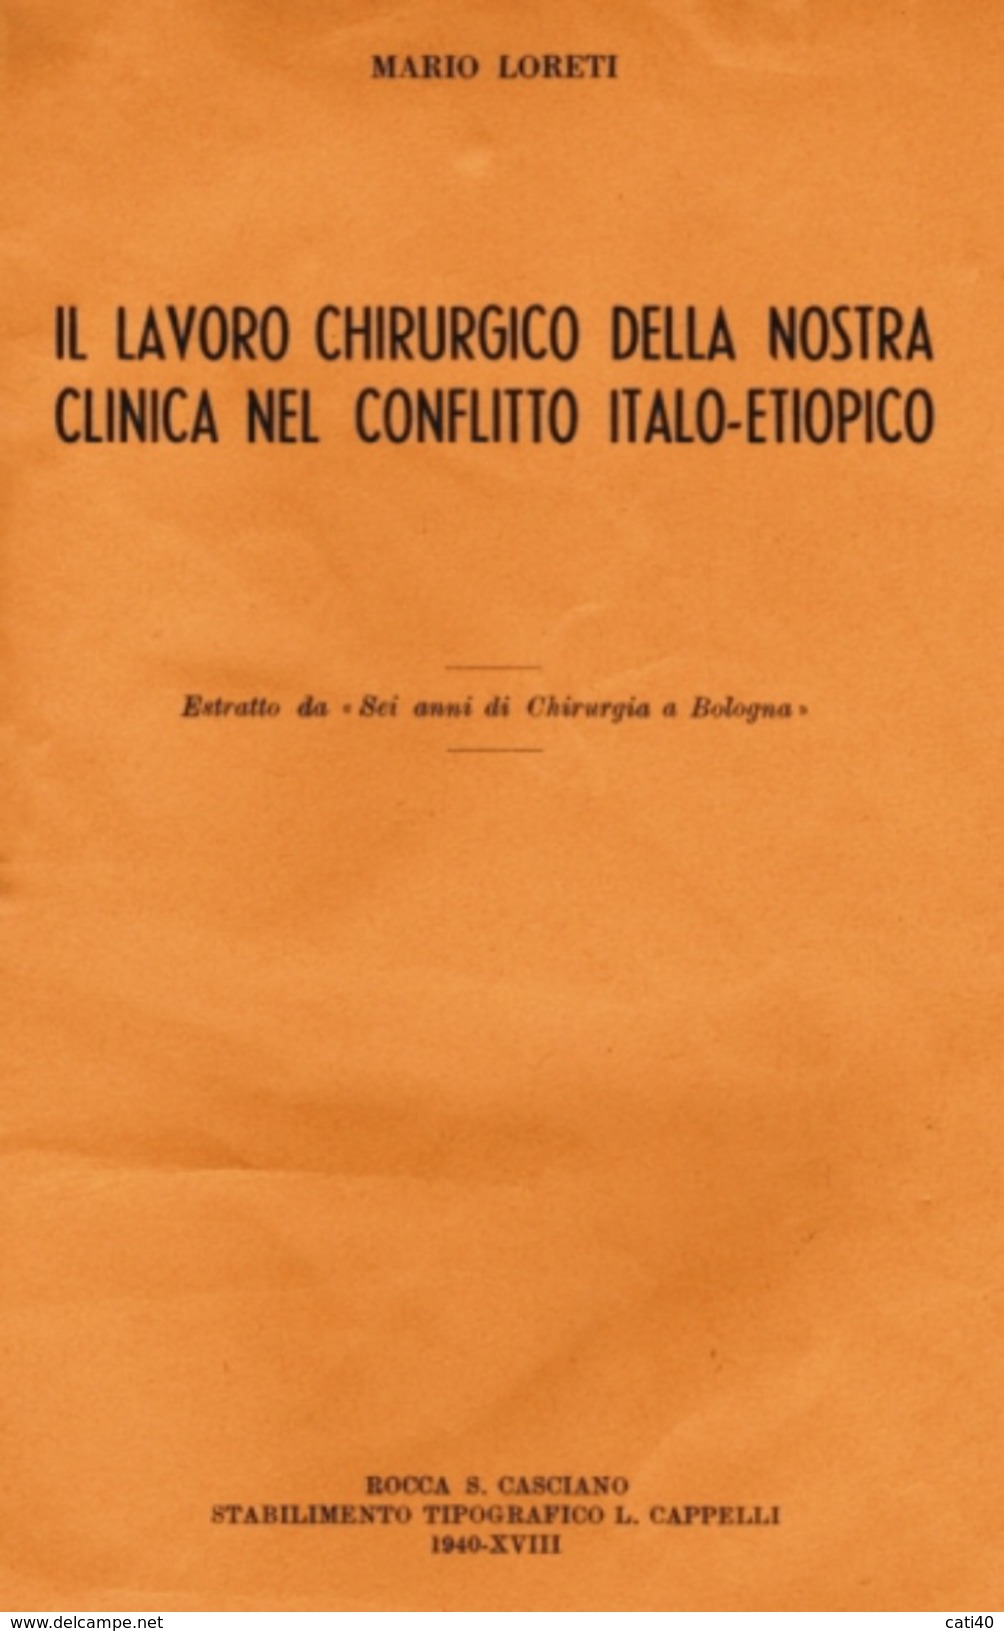 CHIRURGIA  LAVORO NELLA NOSTRA CLINICA NEL CONFLITTO ITALO-ETIOPICO -  LORETI  TIP. CAPPELLI ROCCA S.CASCIANO 1940-XVIII - Geneeskunde, Biologie, Chemie